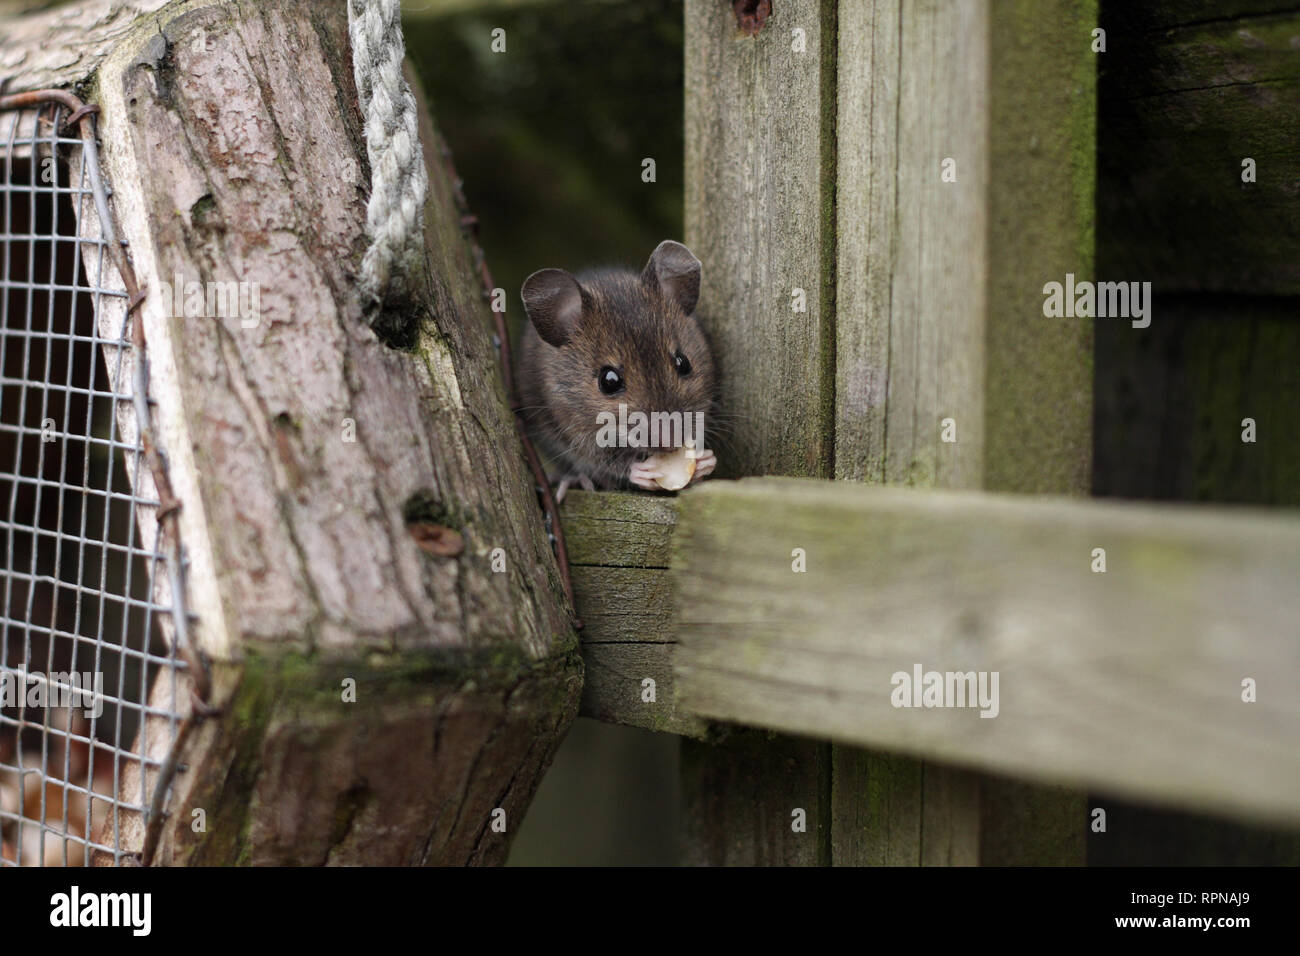 Ce bois a été la souris elle-même aider à écrous de la mangeoire. Photographie prise dans le jardin arrière dans le Worcestershire, Royaume-Uni en mars Banque D'Images